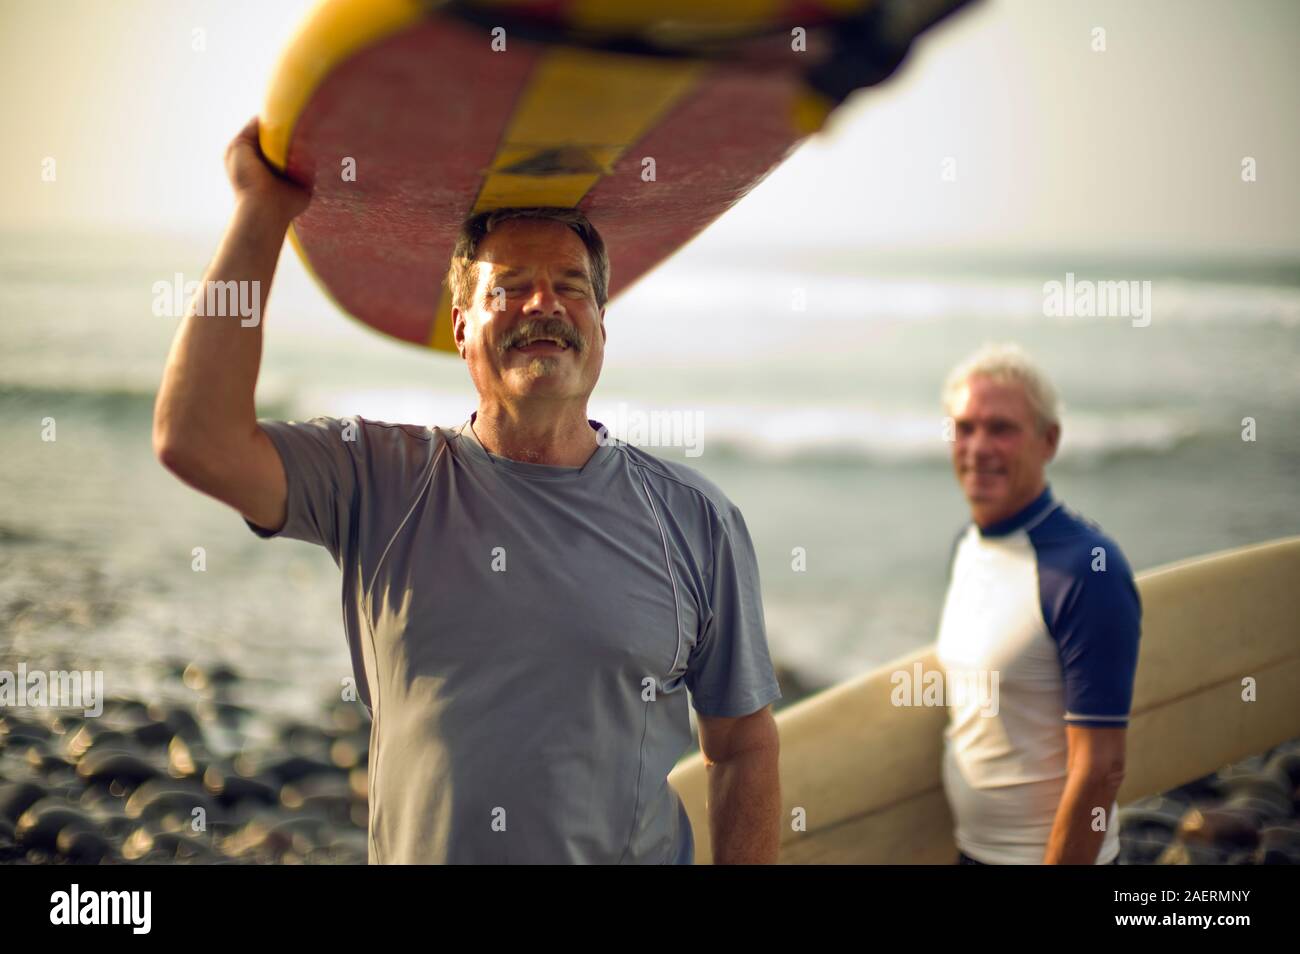 Young man carrying surfboard un rire et son ami masculin transportant un surf sous le bras sourire alors qu'ils posent pour un portrait sur une plage. Banque D'Images